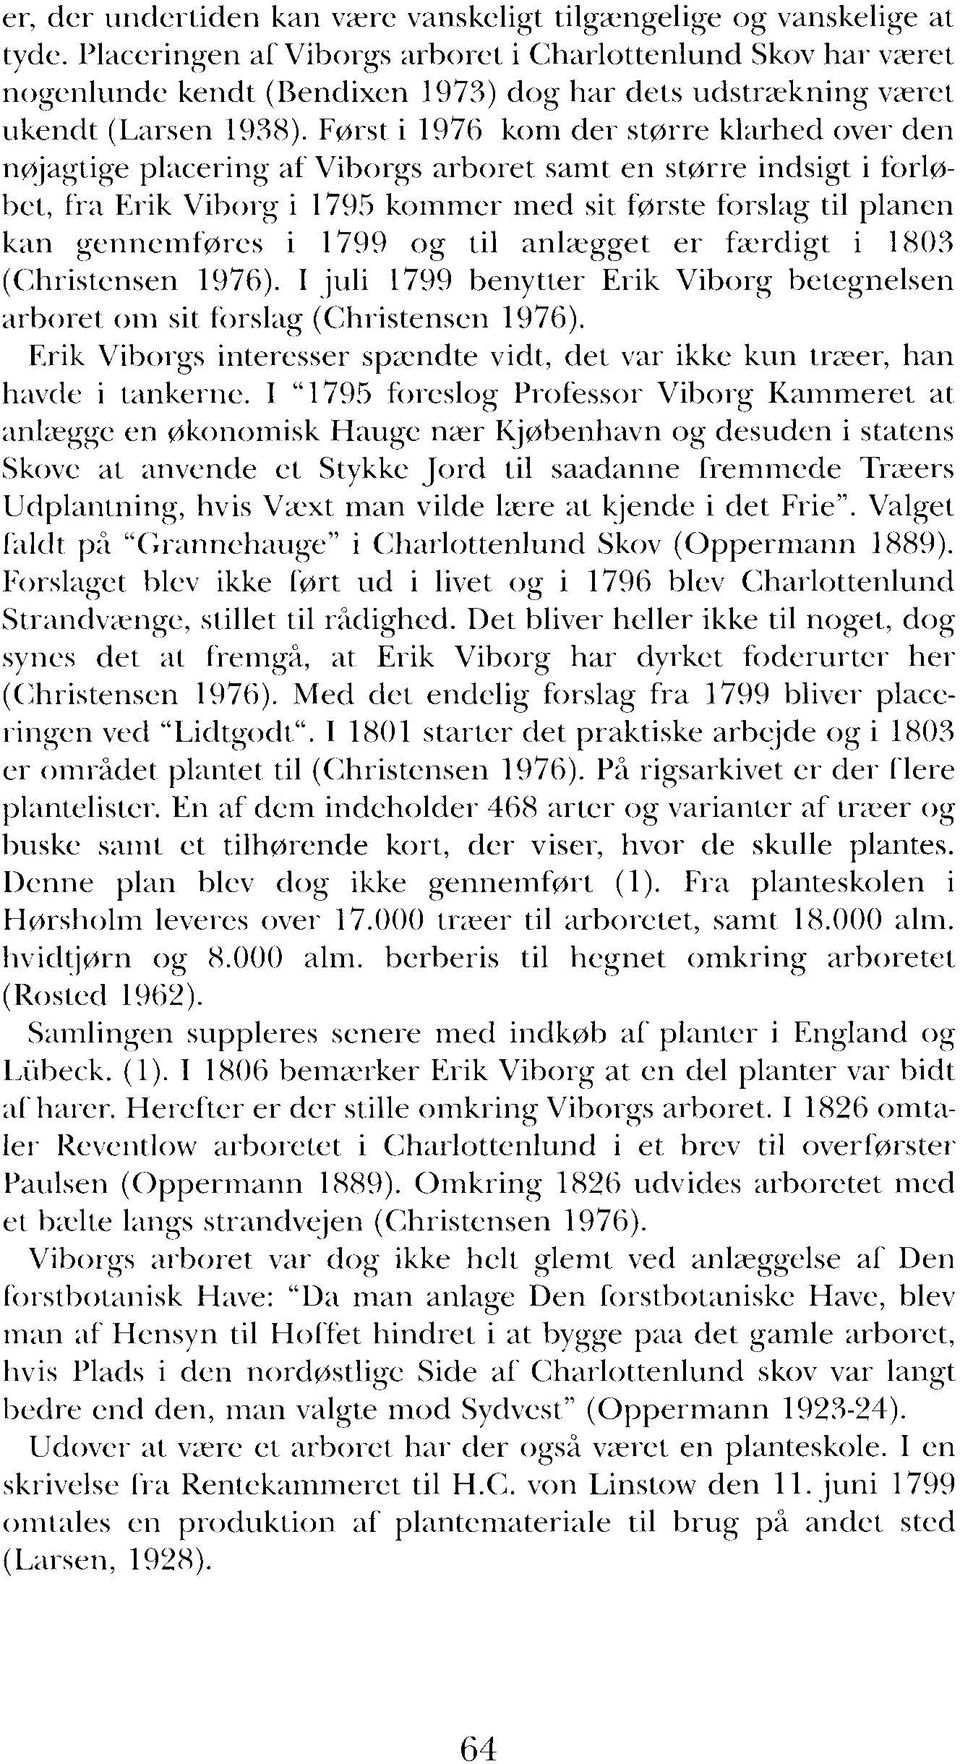 Først i 1976 kom der større klarhed over den nøjagtige placering af Viborgs arboret samt en større indsigt i forløbet, fra Erik Viborg i 1795 kommer med sit første forslag til planen kan gennemføres